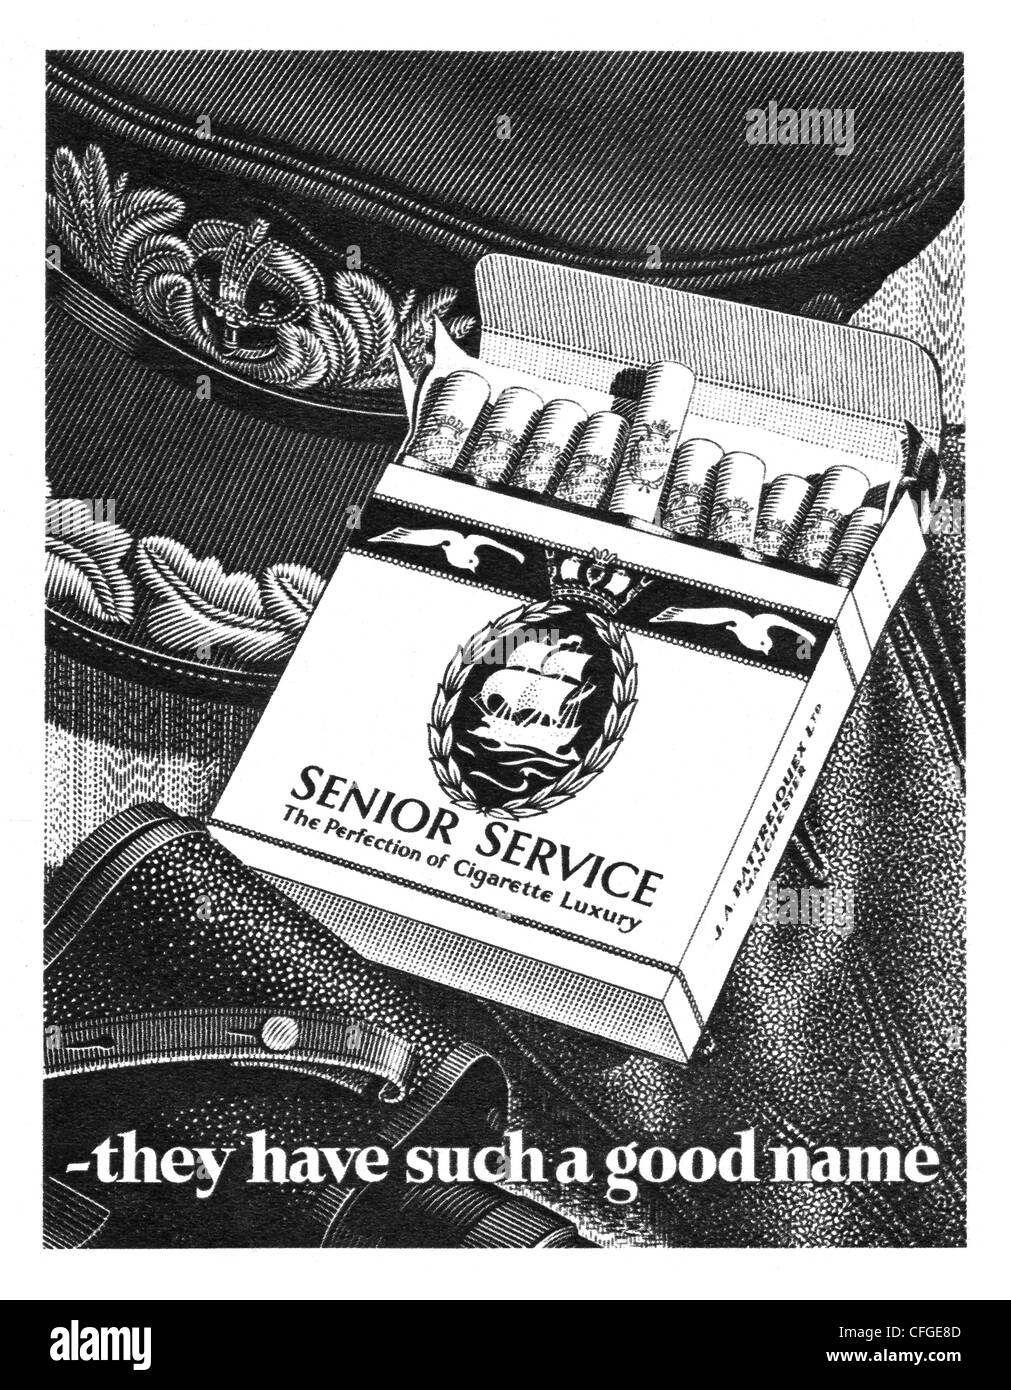 Senior Service publicité des cigarettes à partir de 1952 Banque D'Images